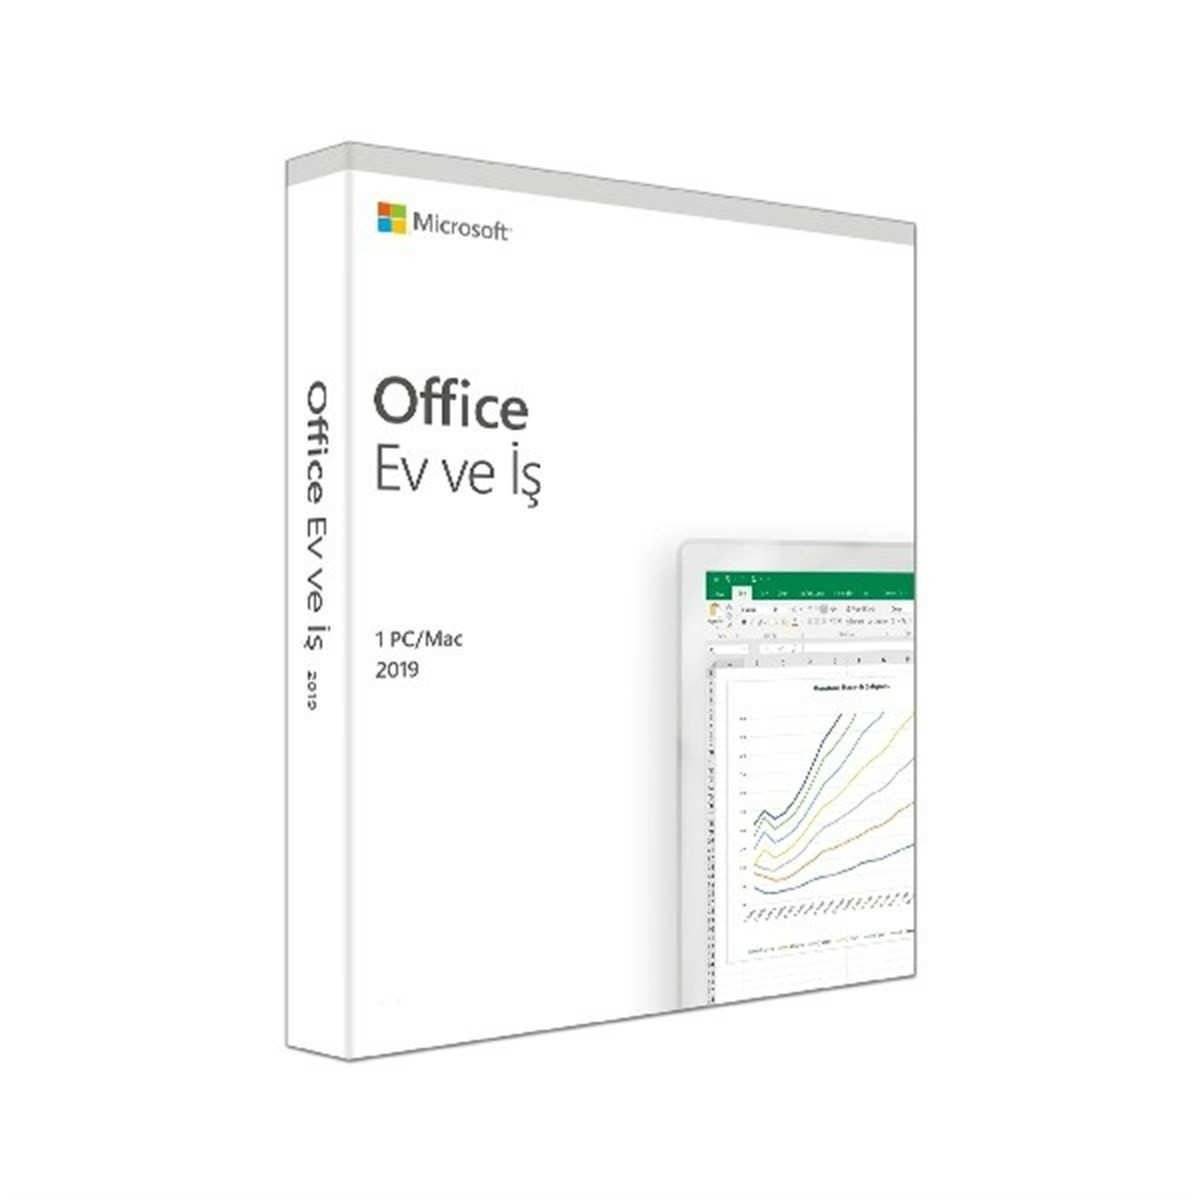 Microsoft Office 2019 Ev ve İş 1 PC Türkçe Lisans Kutu ( ÖMÜR BOYU ) T5D-03258 Ofis Yazılımı